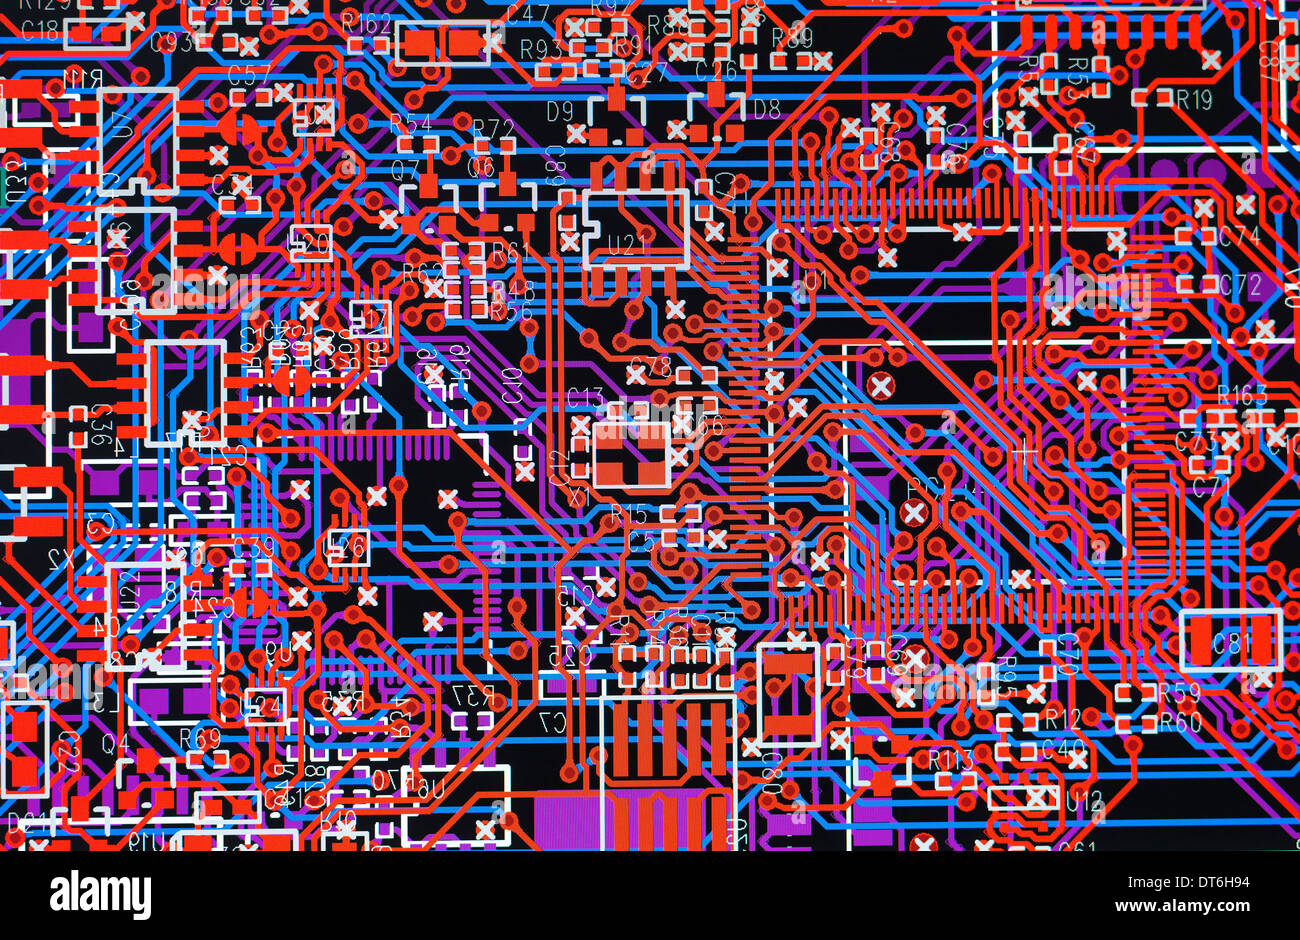 Pantalla de ordenador con diagrama de circuitos electrónicos para su uso en el automóvil Foto de stock